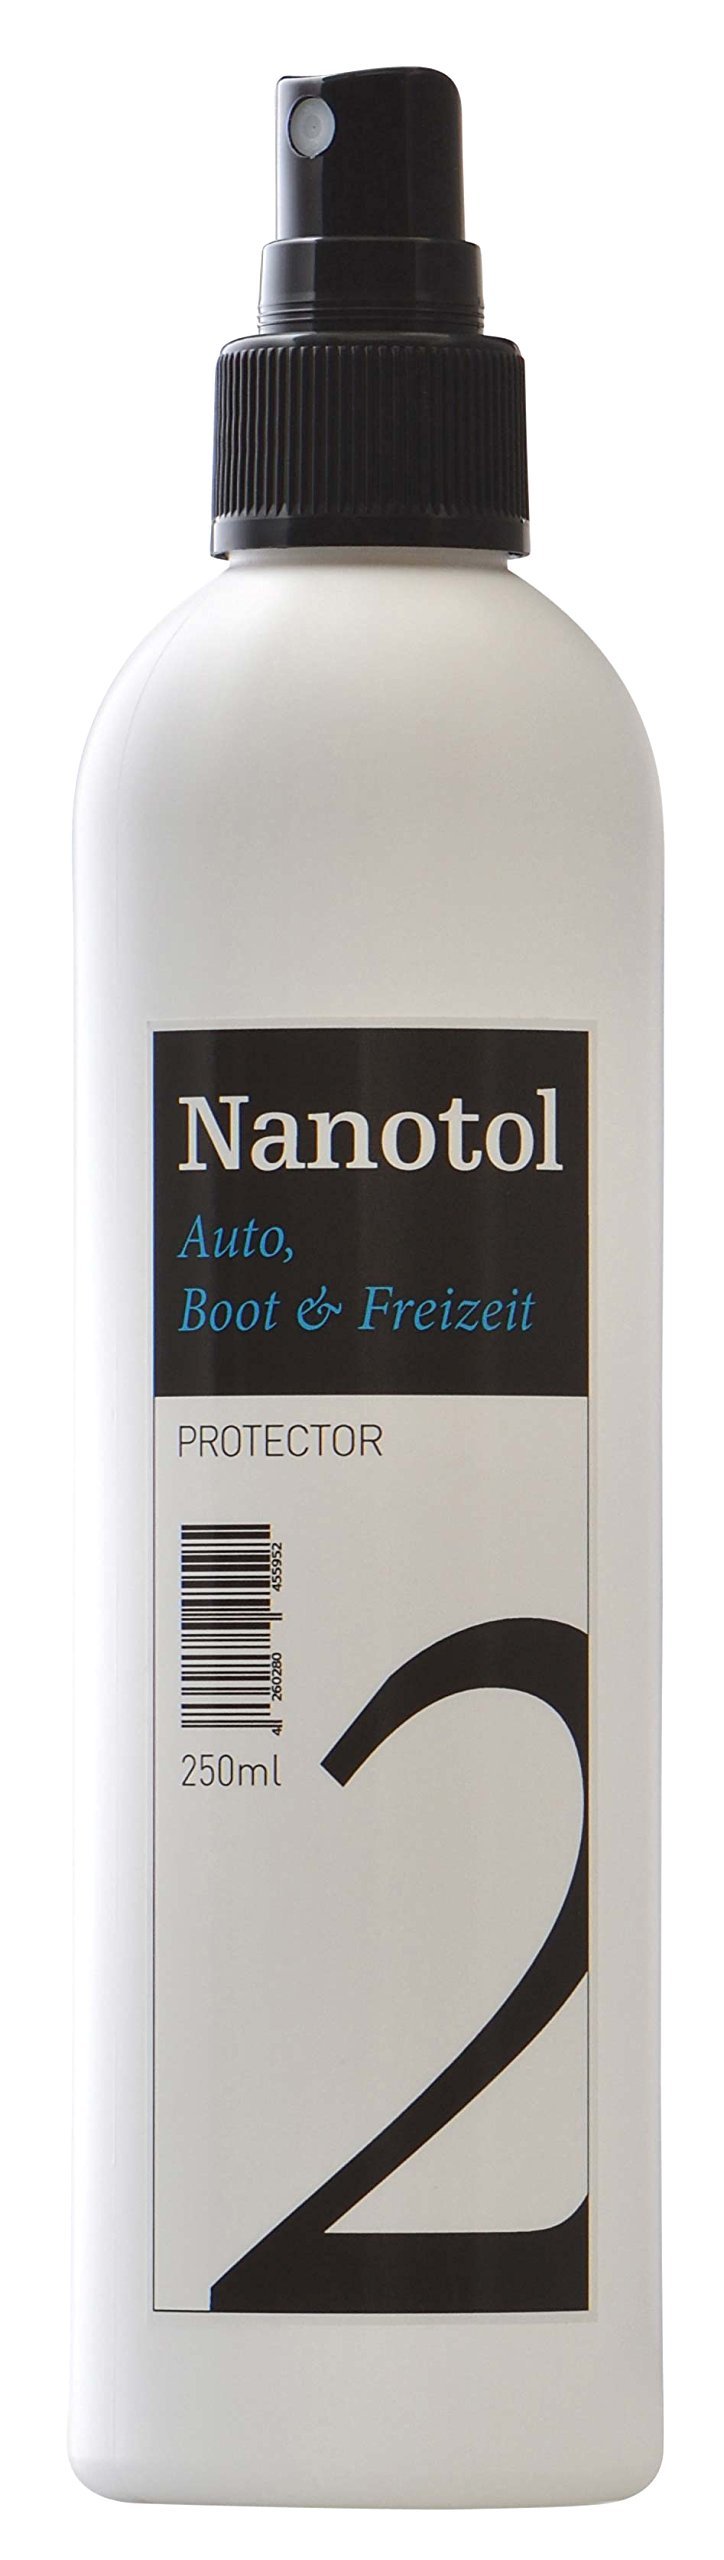 Nanotol Auto, Boot, Freizeit Protector 250 ml (40 m²) - Nanoversiegelung (Step 2) für Lack, Felgen, Autoglas - Glanzversiegelung Lackpflege Lotuseffekt Keramik-Polymer-Hybrid-Beschichtung von Nanotol